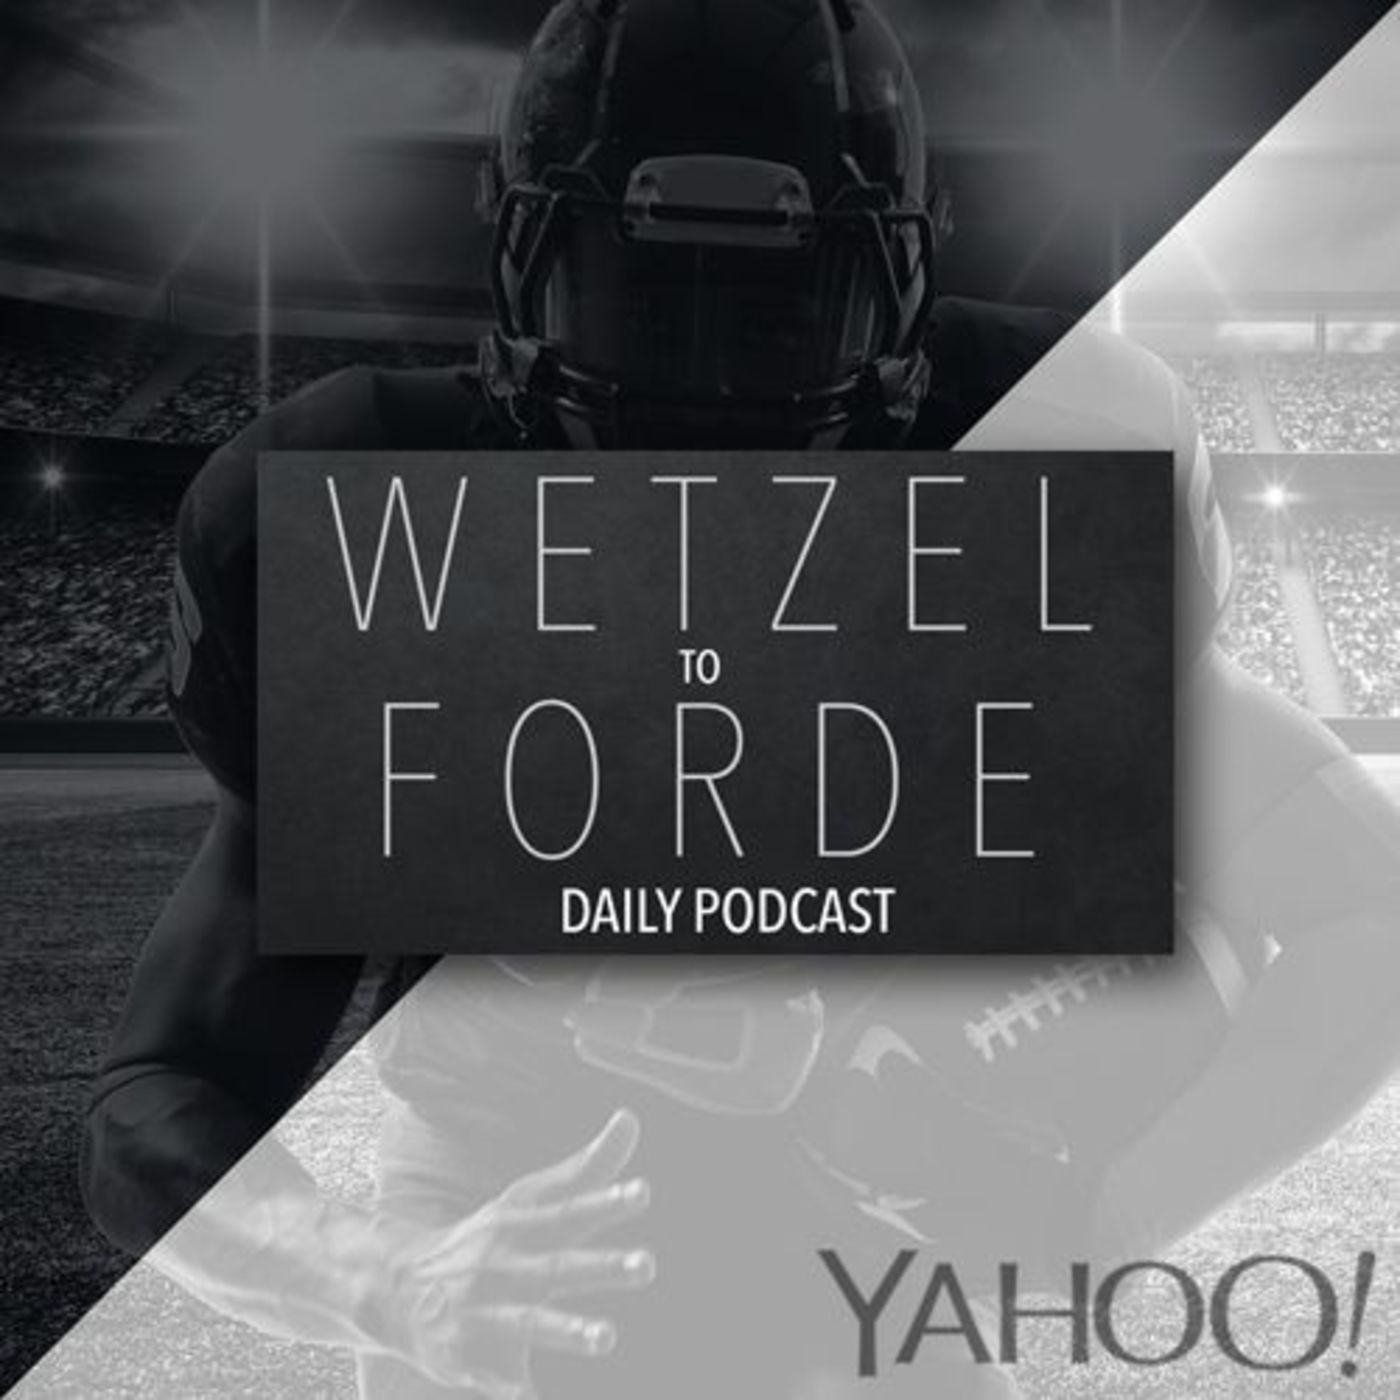 FULL SHOW: Wetzel To Forde (11 - 17 - 15)